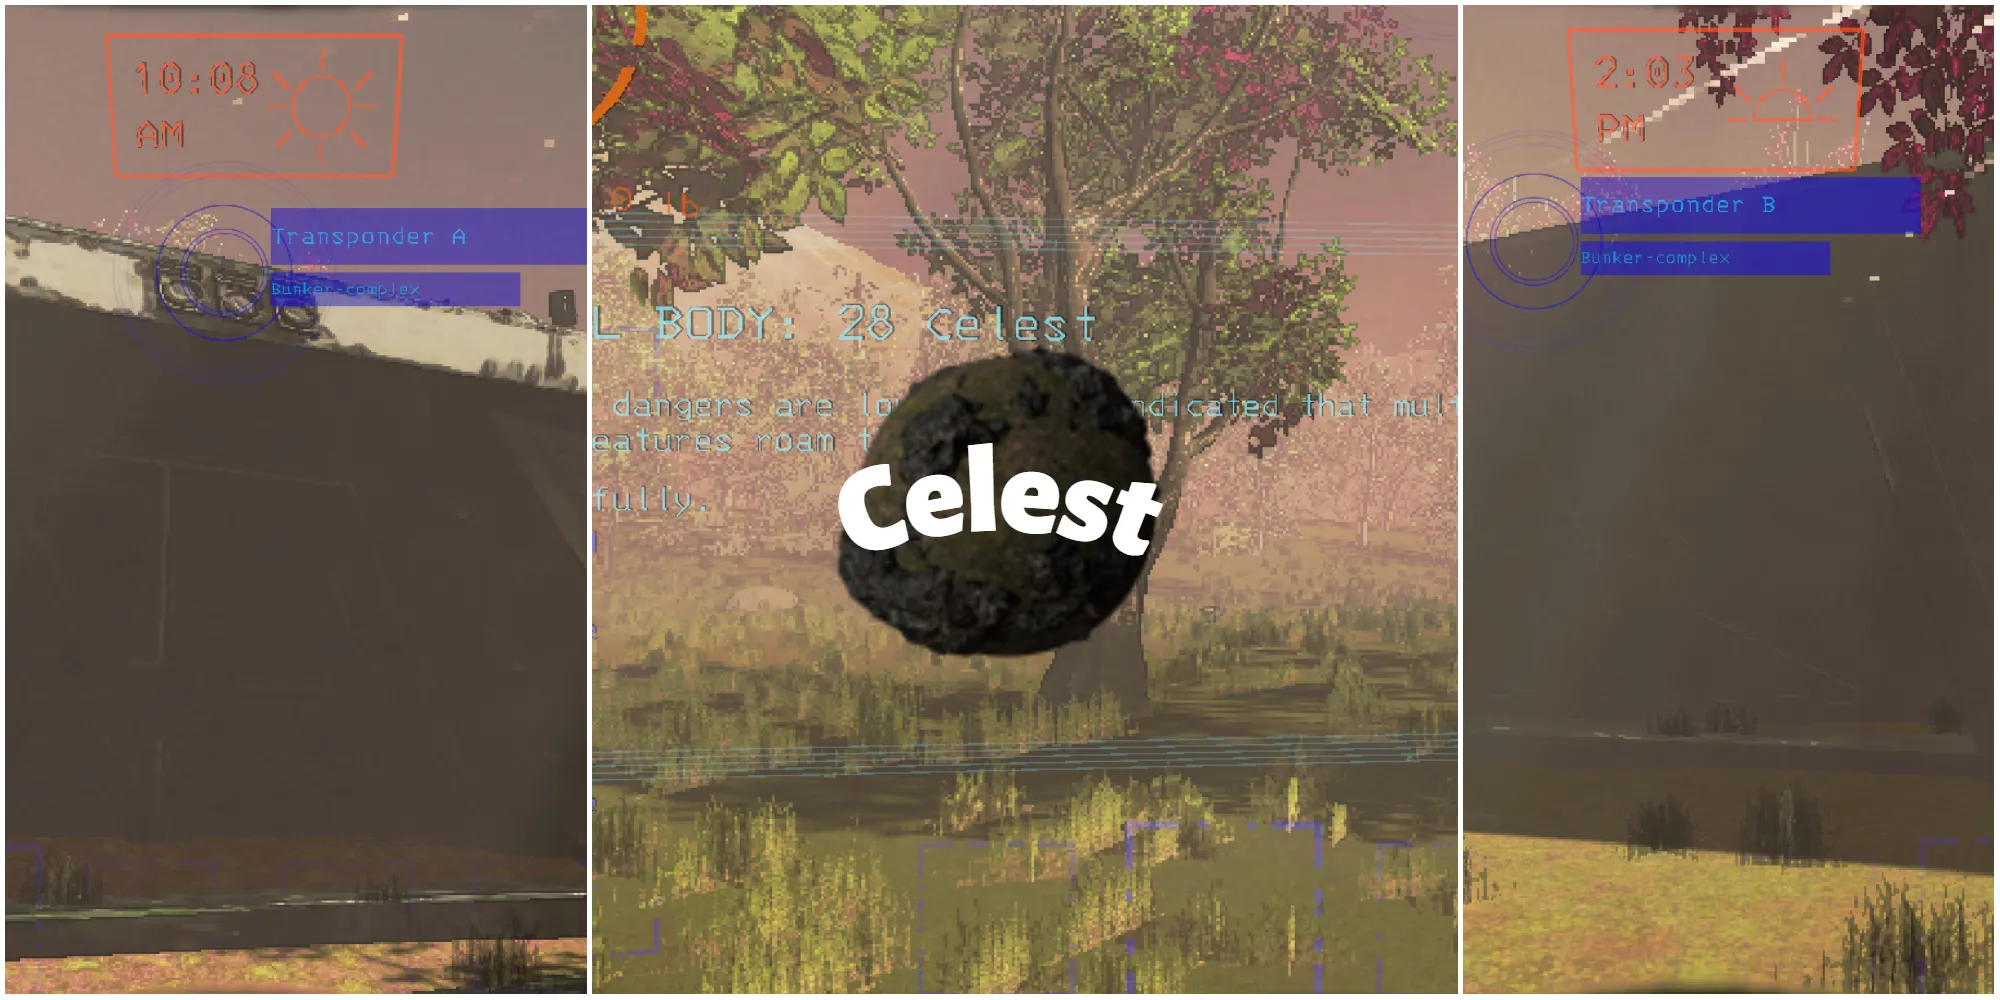 来自名为Celest的modded月球的屏幕截图，其中包含一个废弃的掩体和一片田野